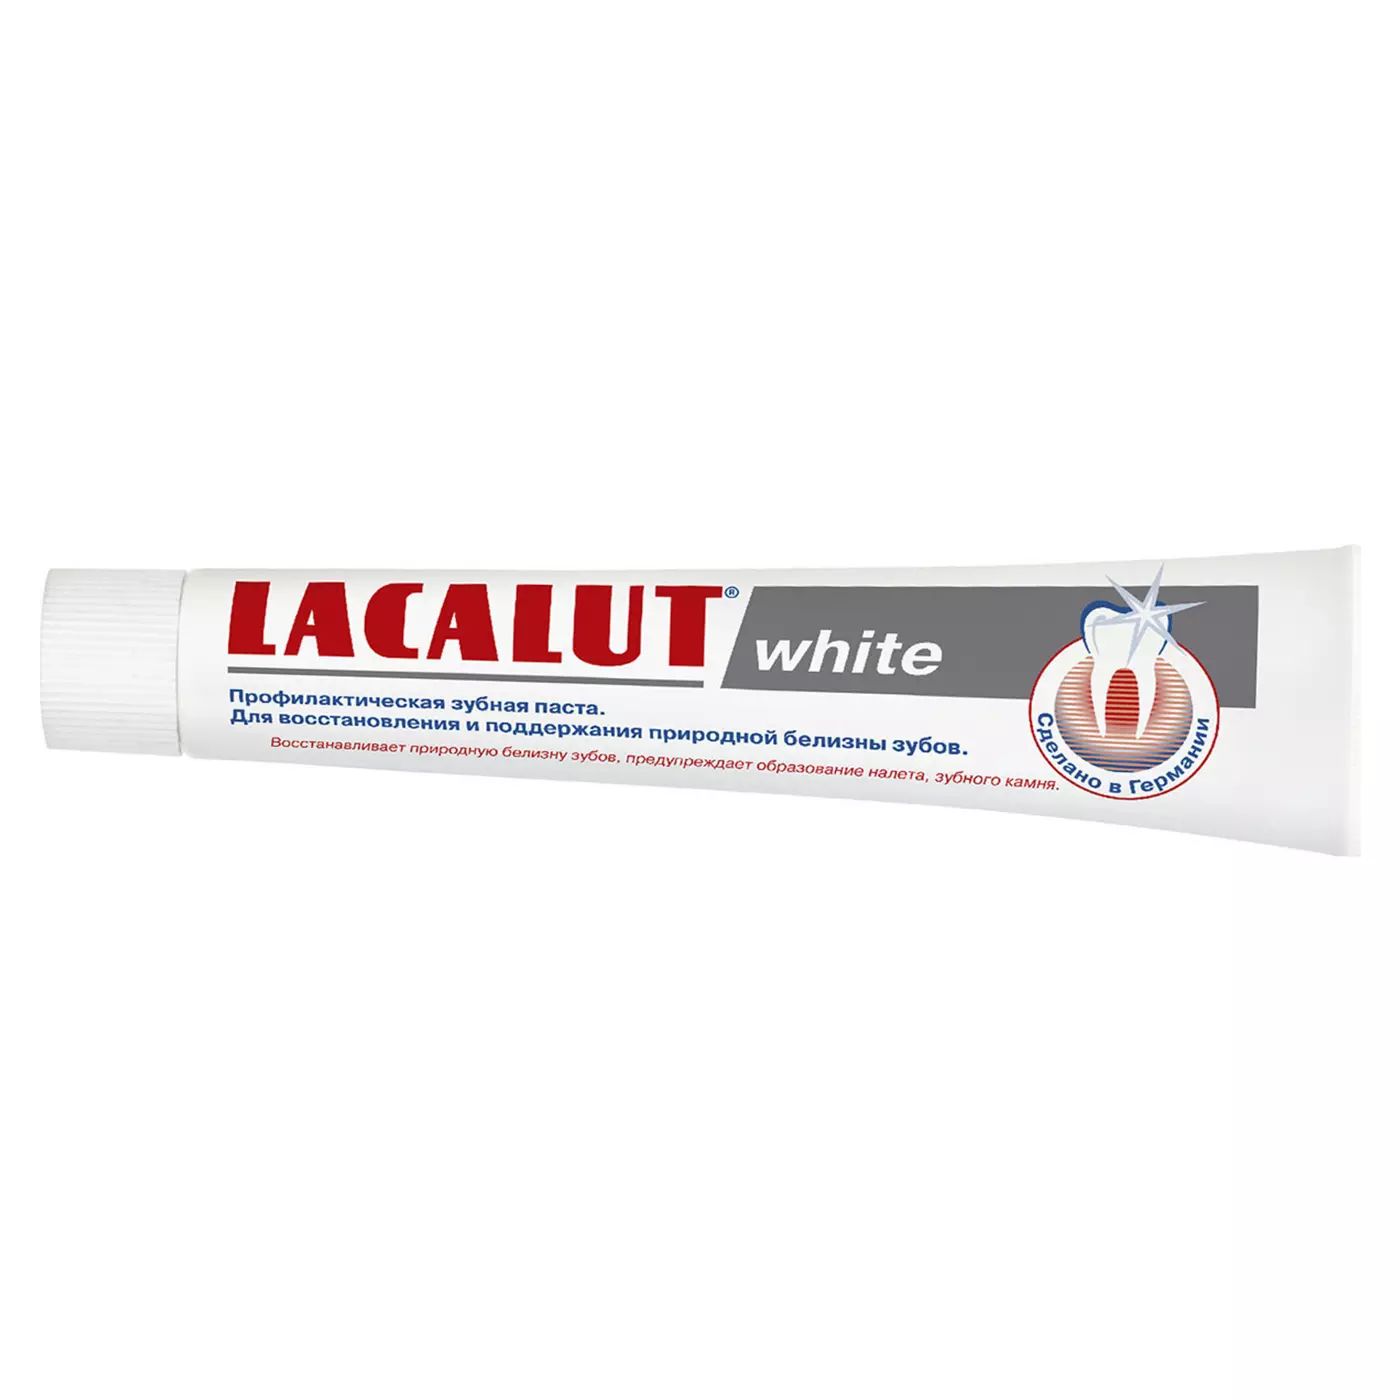 Профилактическая зубная паста LACALUT white 75 мл lacalut basic white отбеливающая зубная паста 65 г